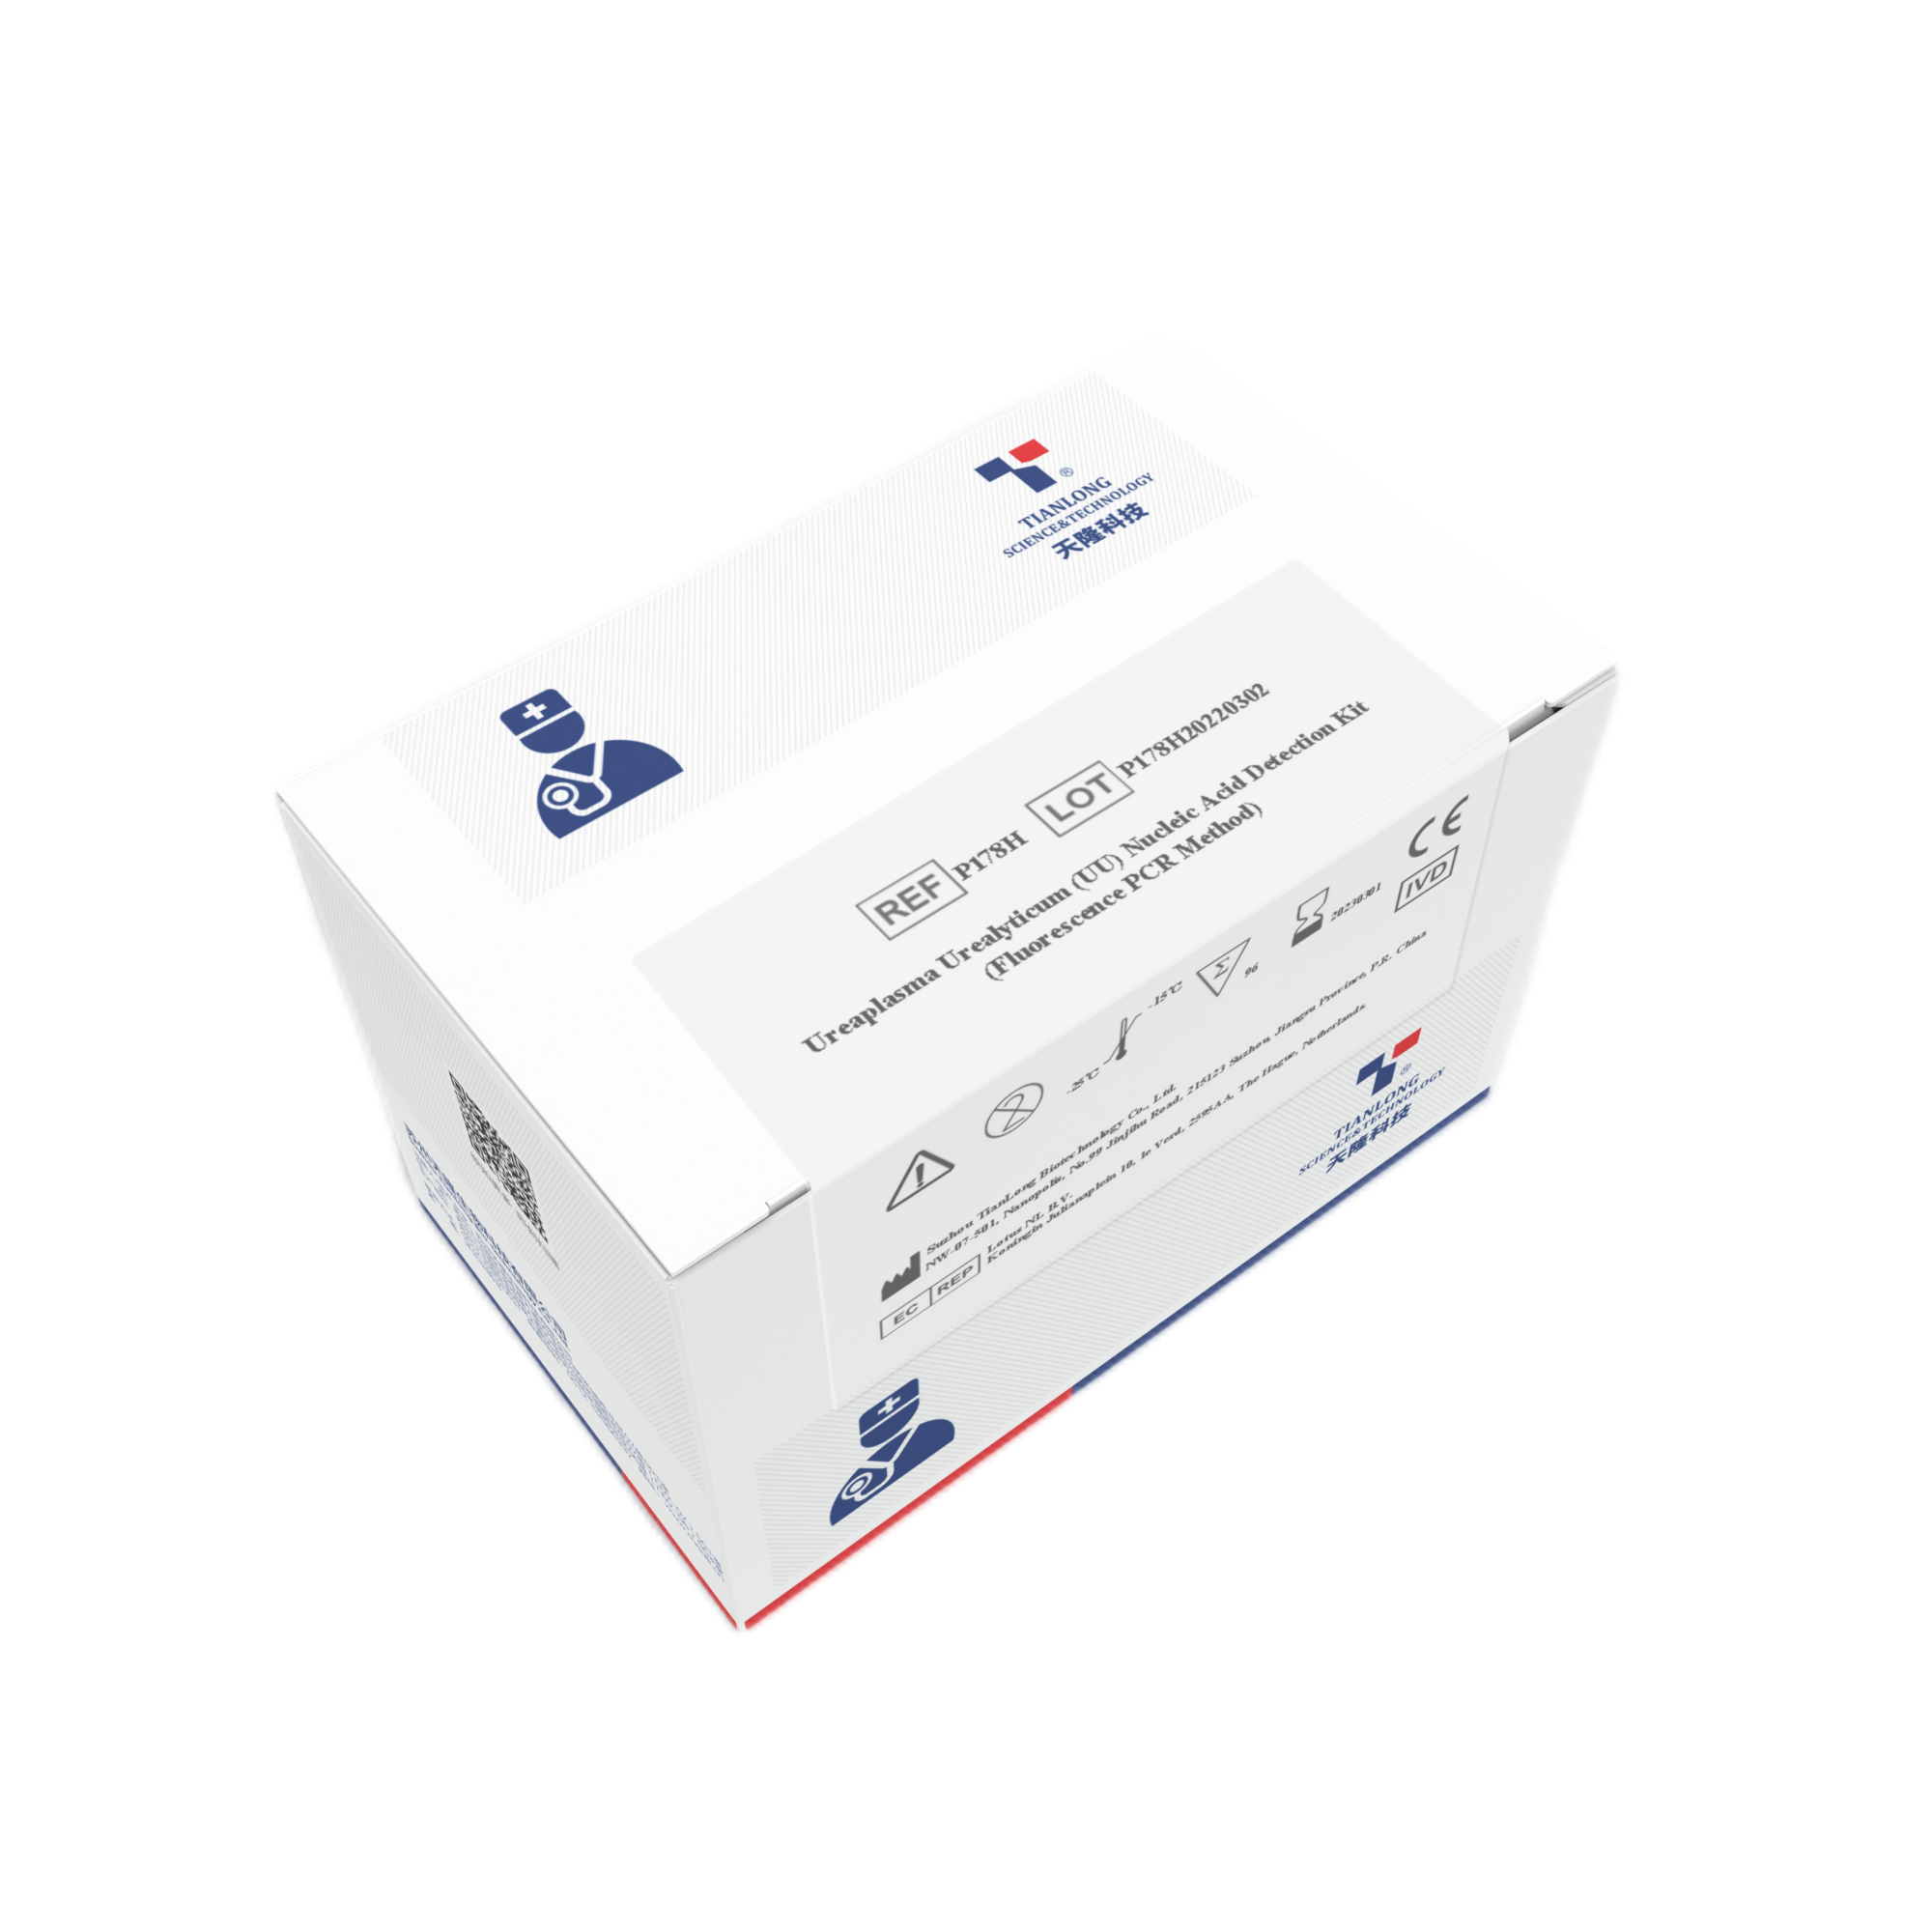 P132H- Kit de detección de infecciones de transmisión sexual CT/ NG/UU / UP Multiplex PCR